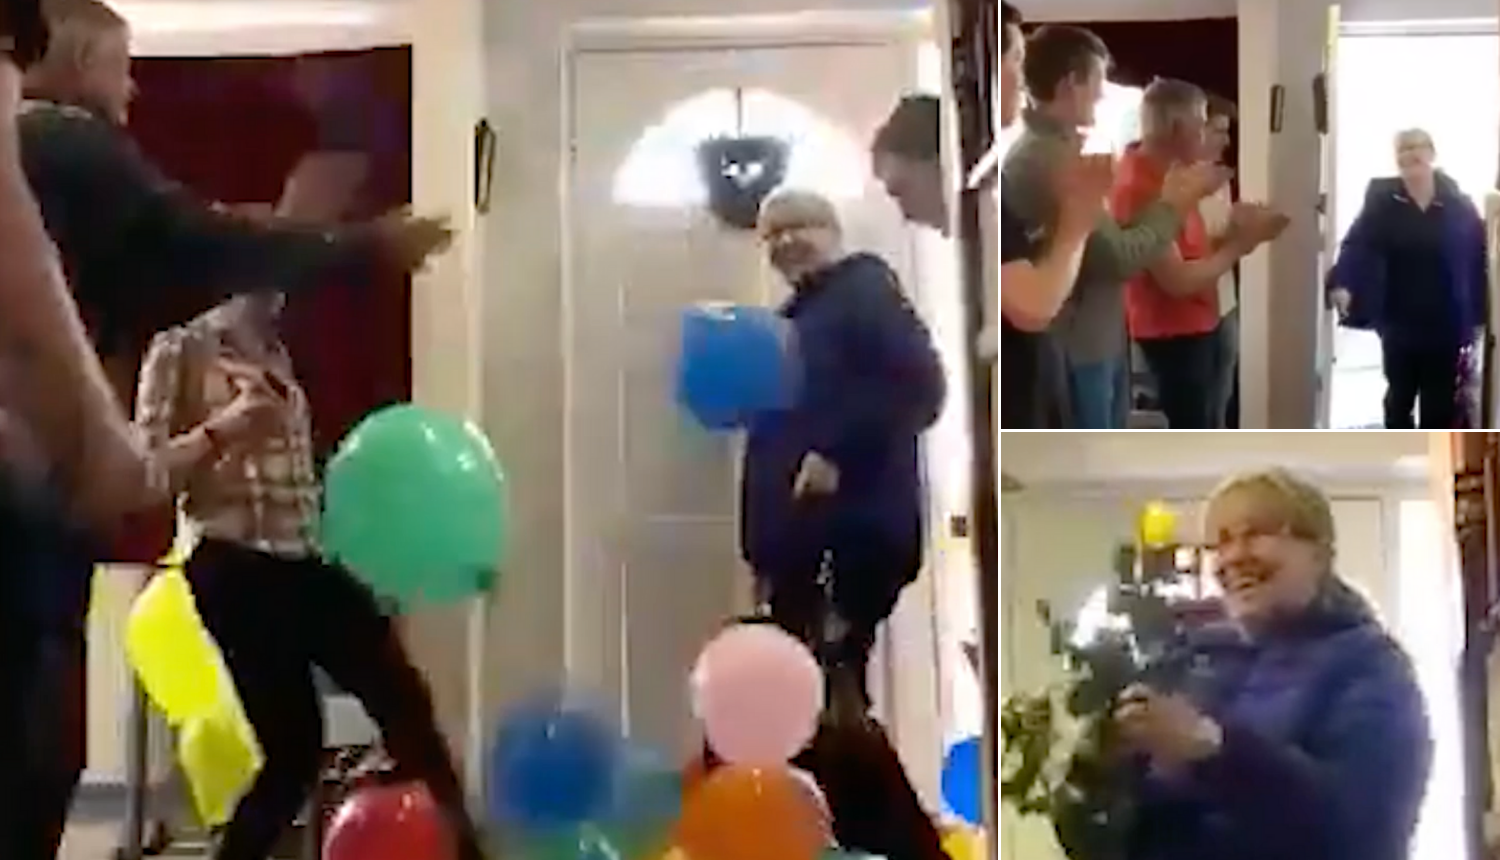 Sve za mamu: Nakon smjene u bolnici dočekaju je s balonima